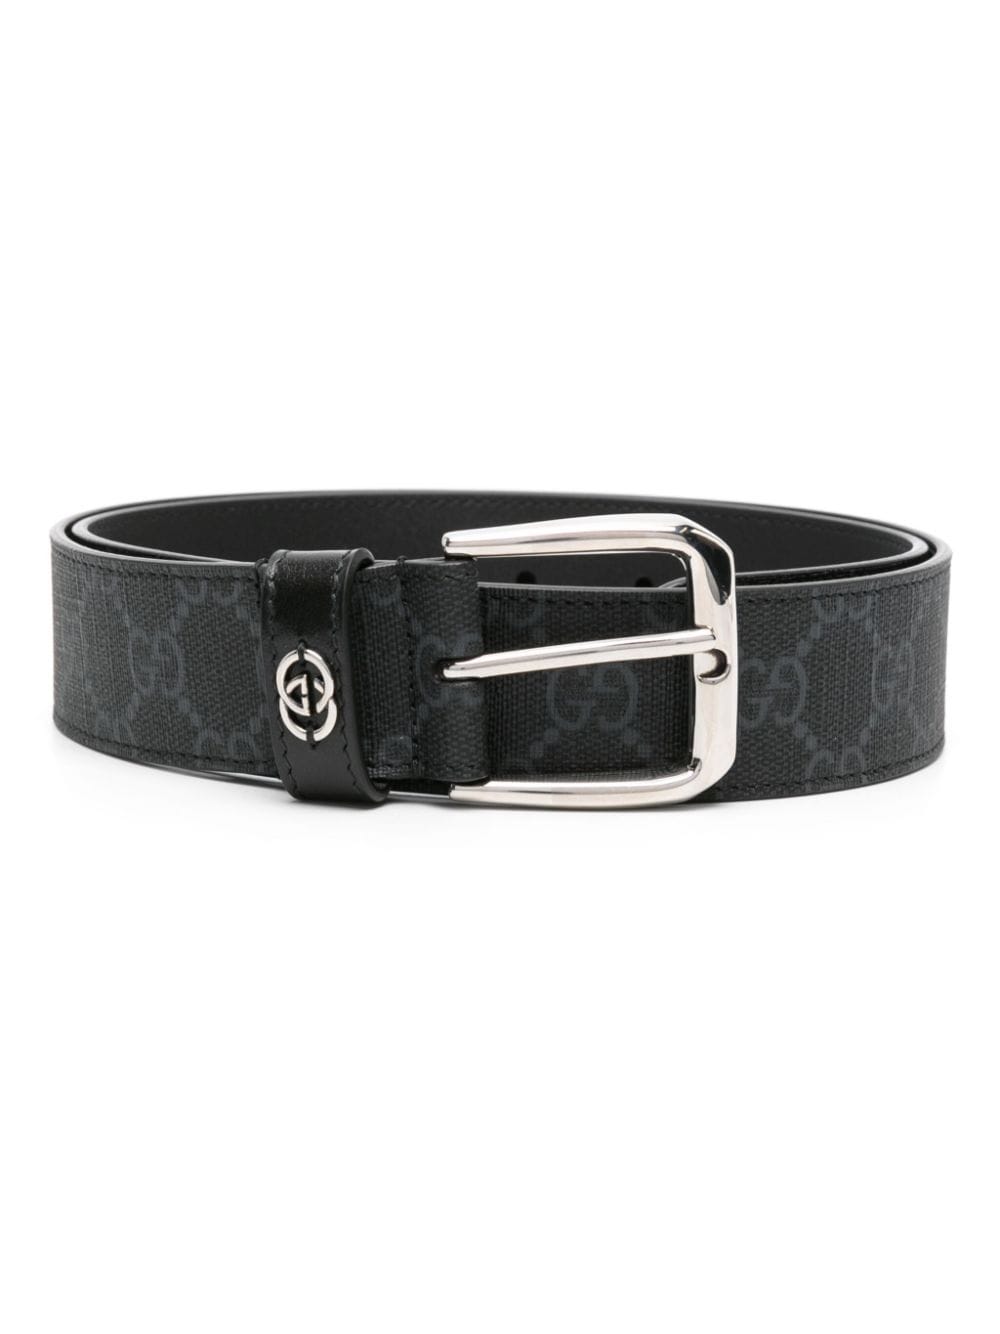 Gucci GG Supreme leather belt - Black von Gucci